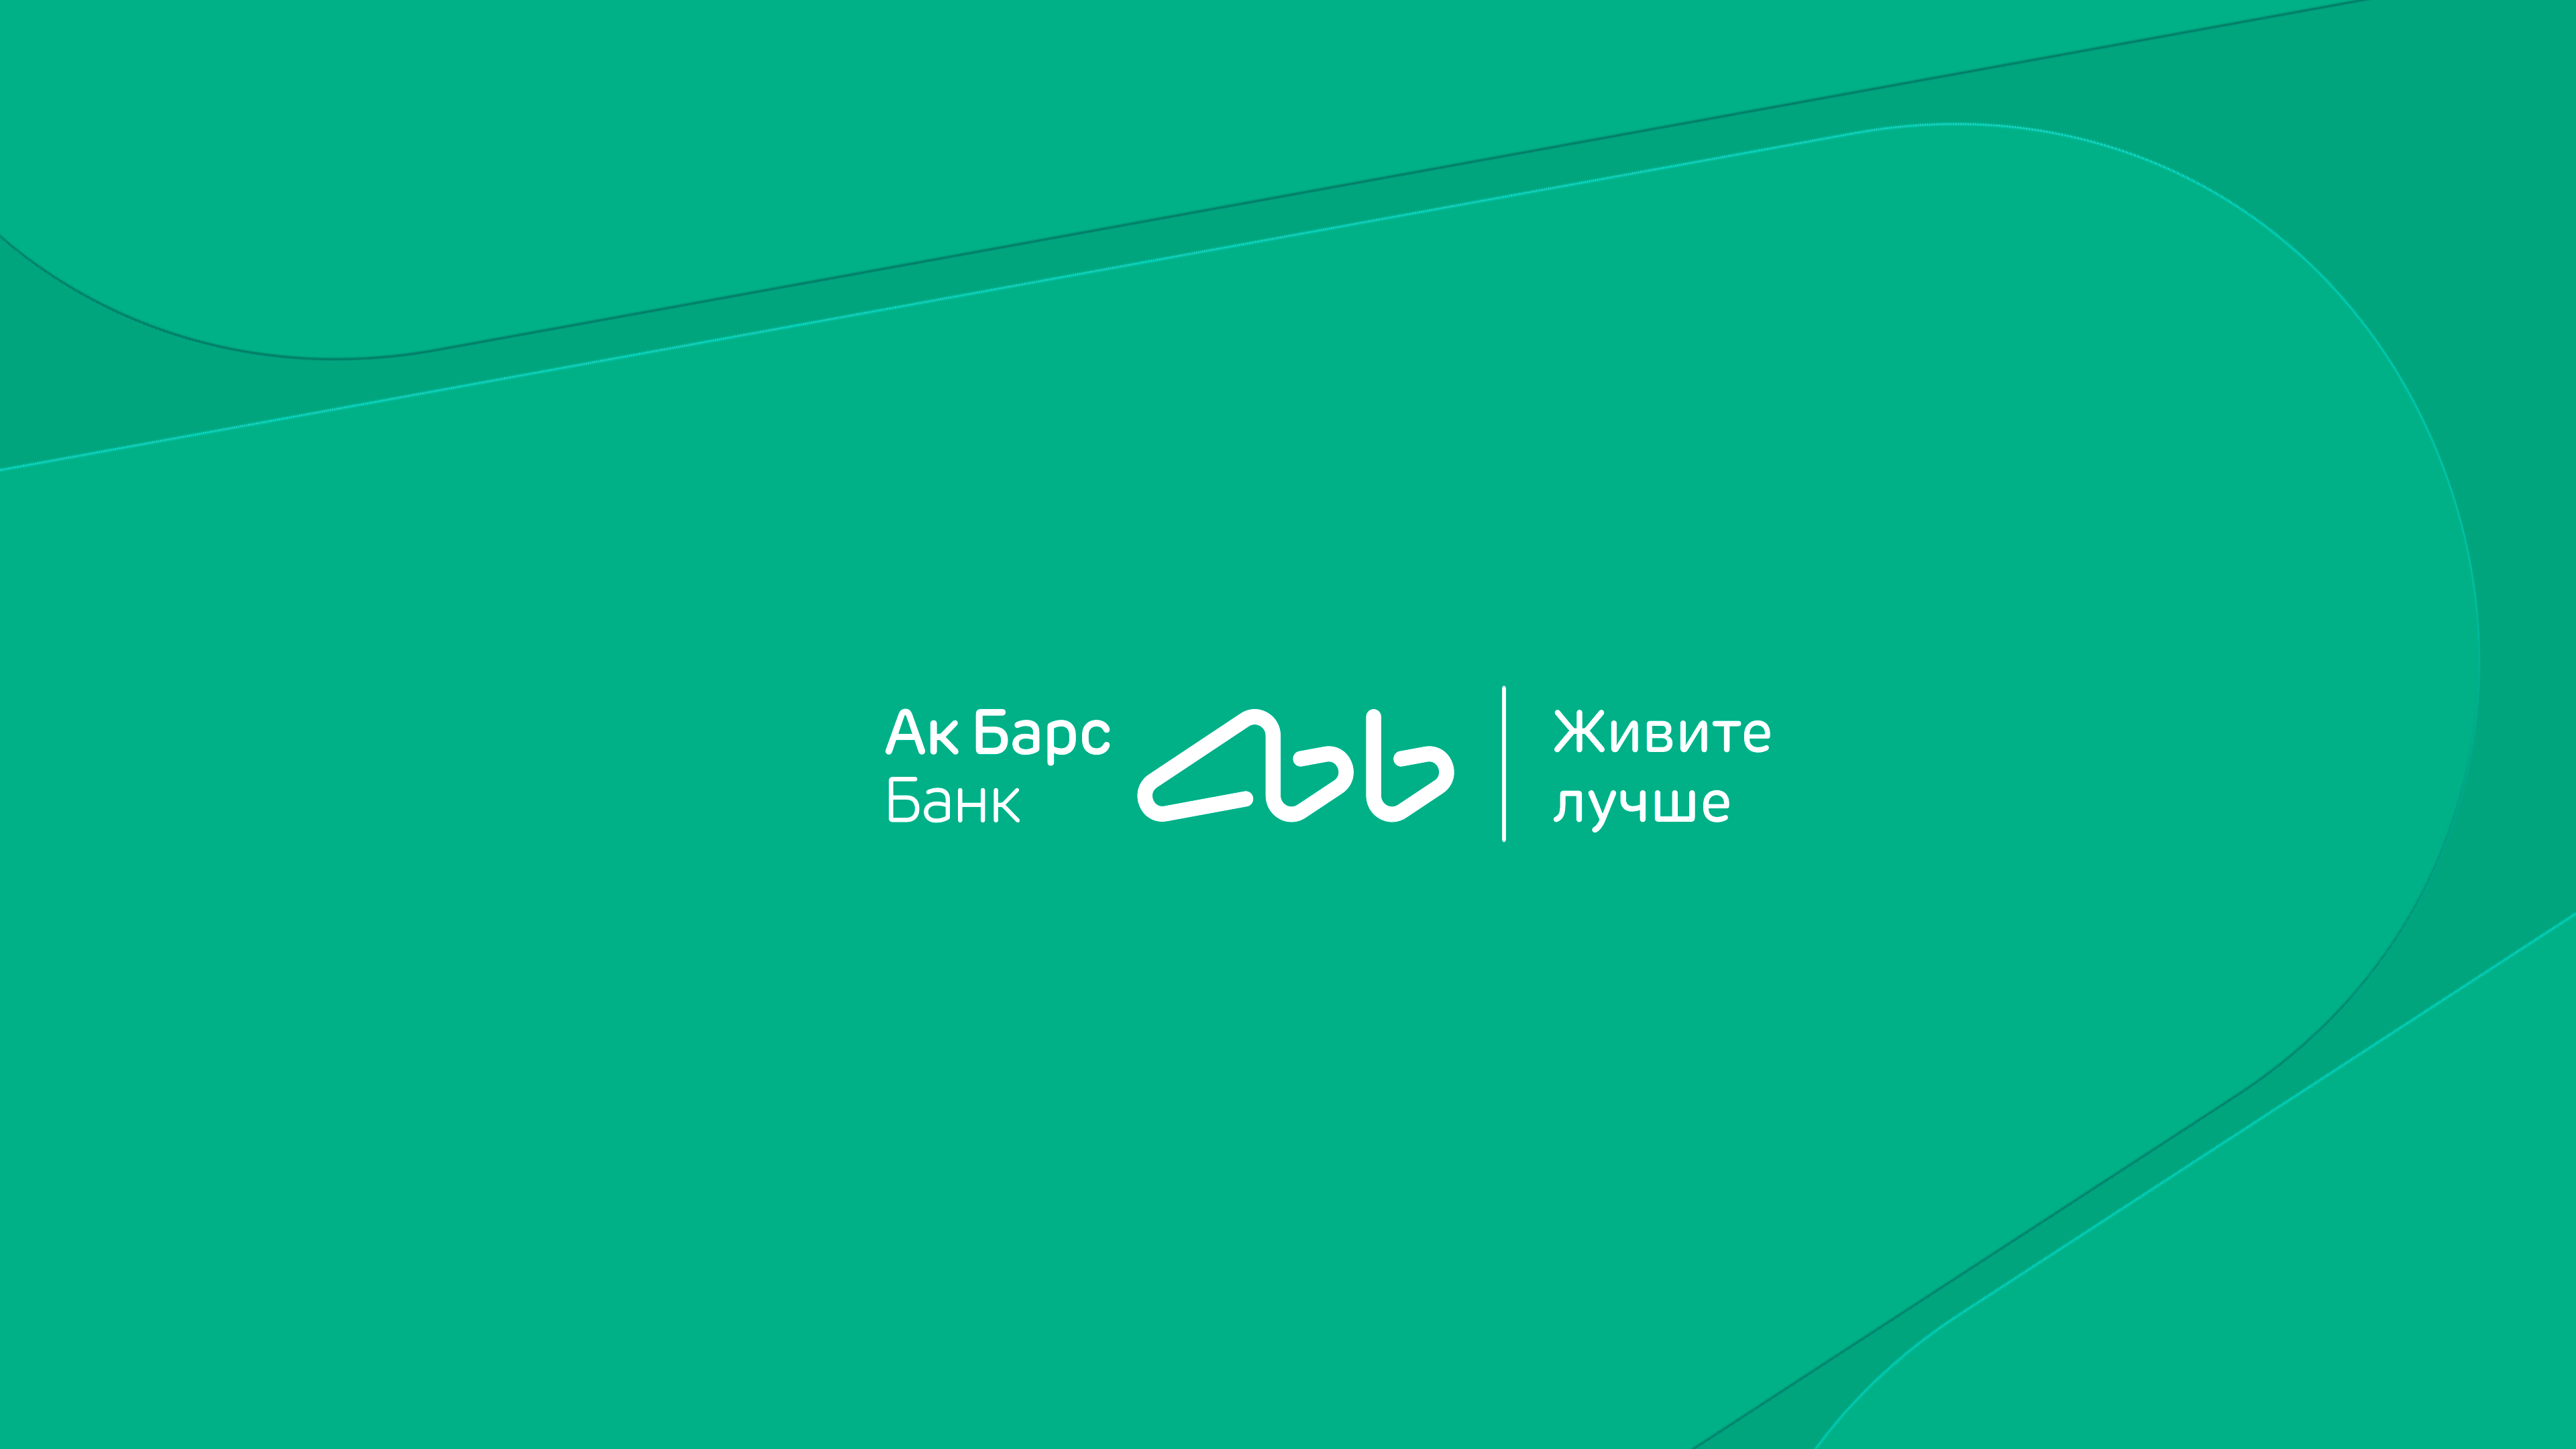 Бренд АК Барс банк. АК Барс банк факторинг. АК Барс банк logo. АК Барс банк малый бизнес. Акбарсбанк санкт петербург